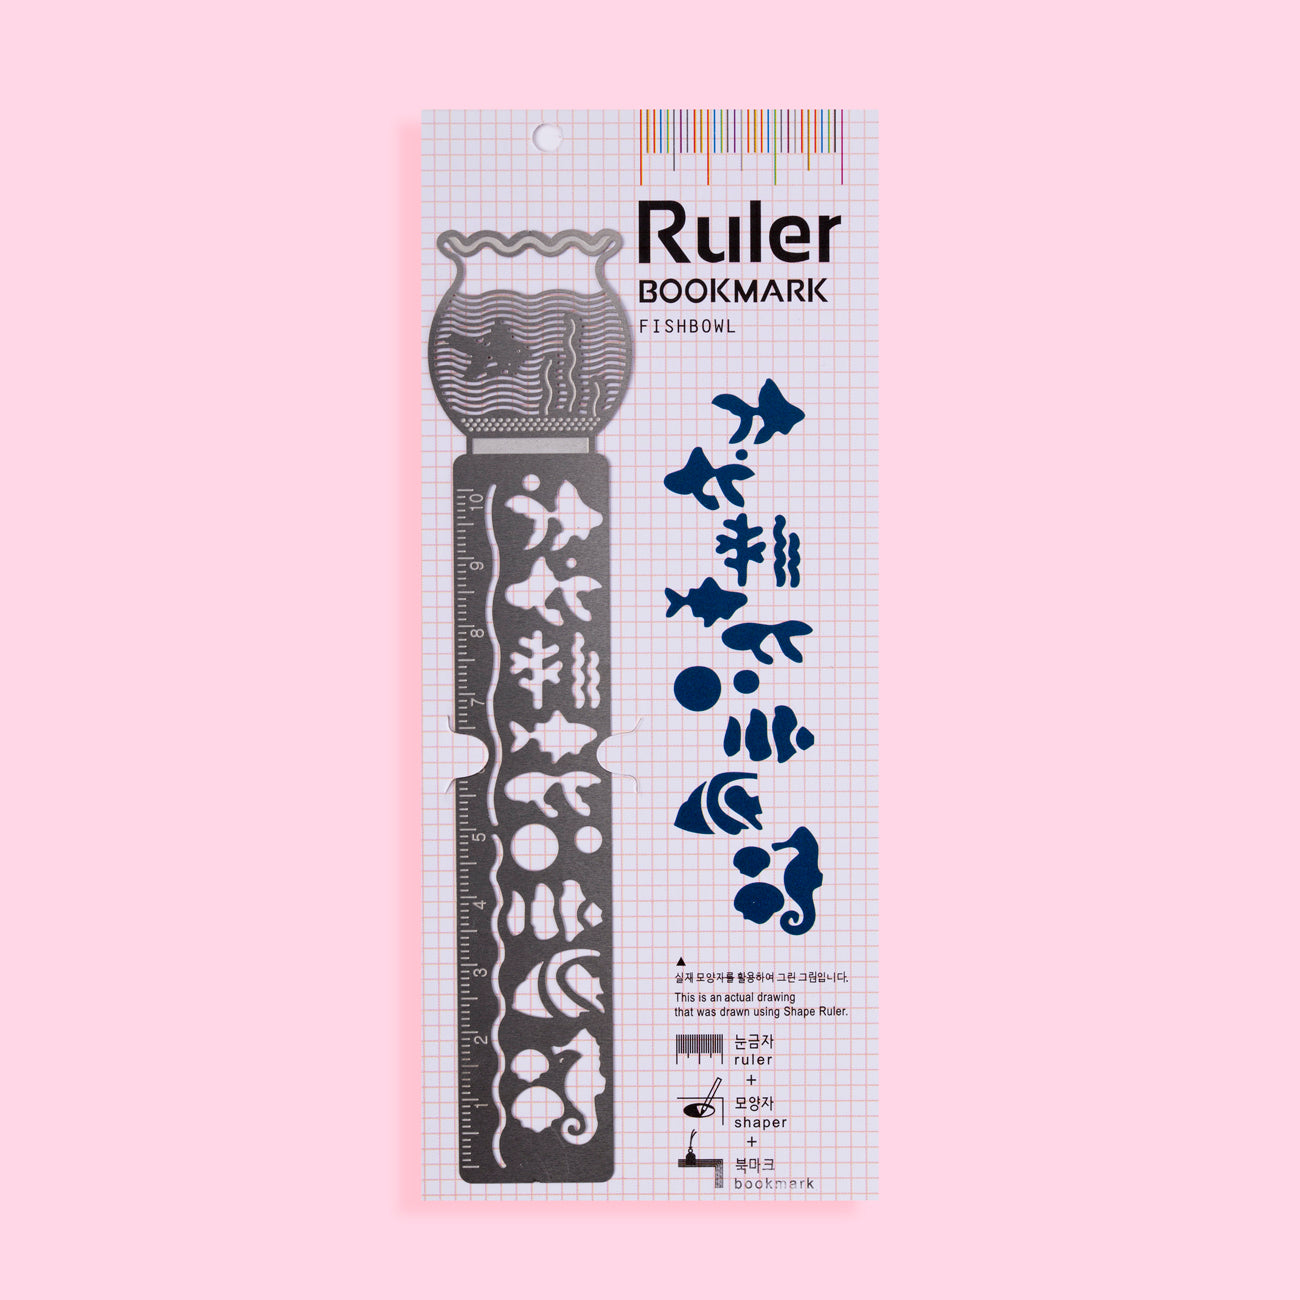 Ruler Bookmark - Fishbowl